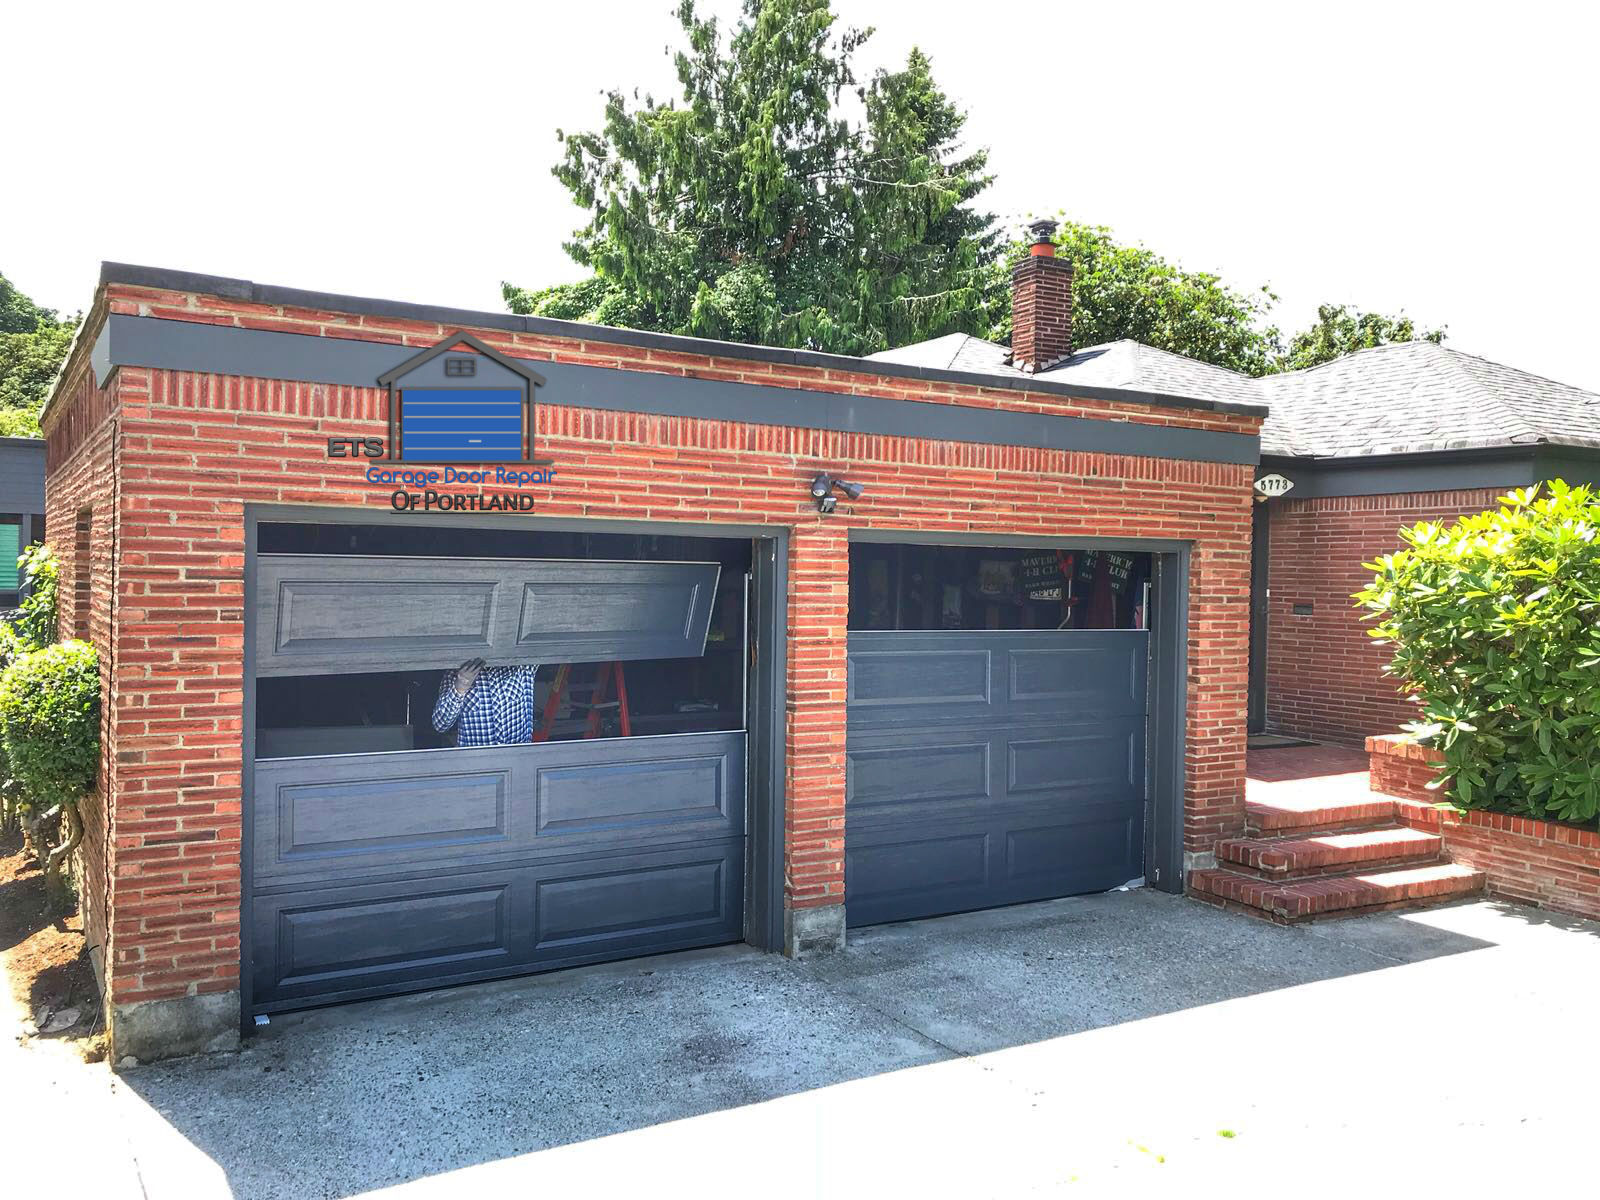 ETS Garage Door Repair Of Newberg- Garage Door Repair & Installation Services9